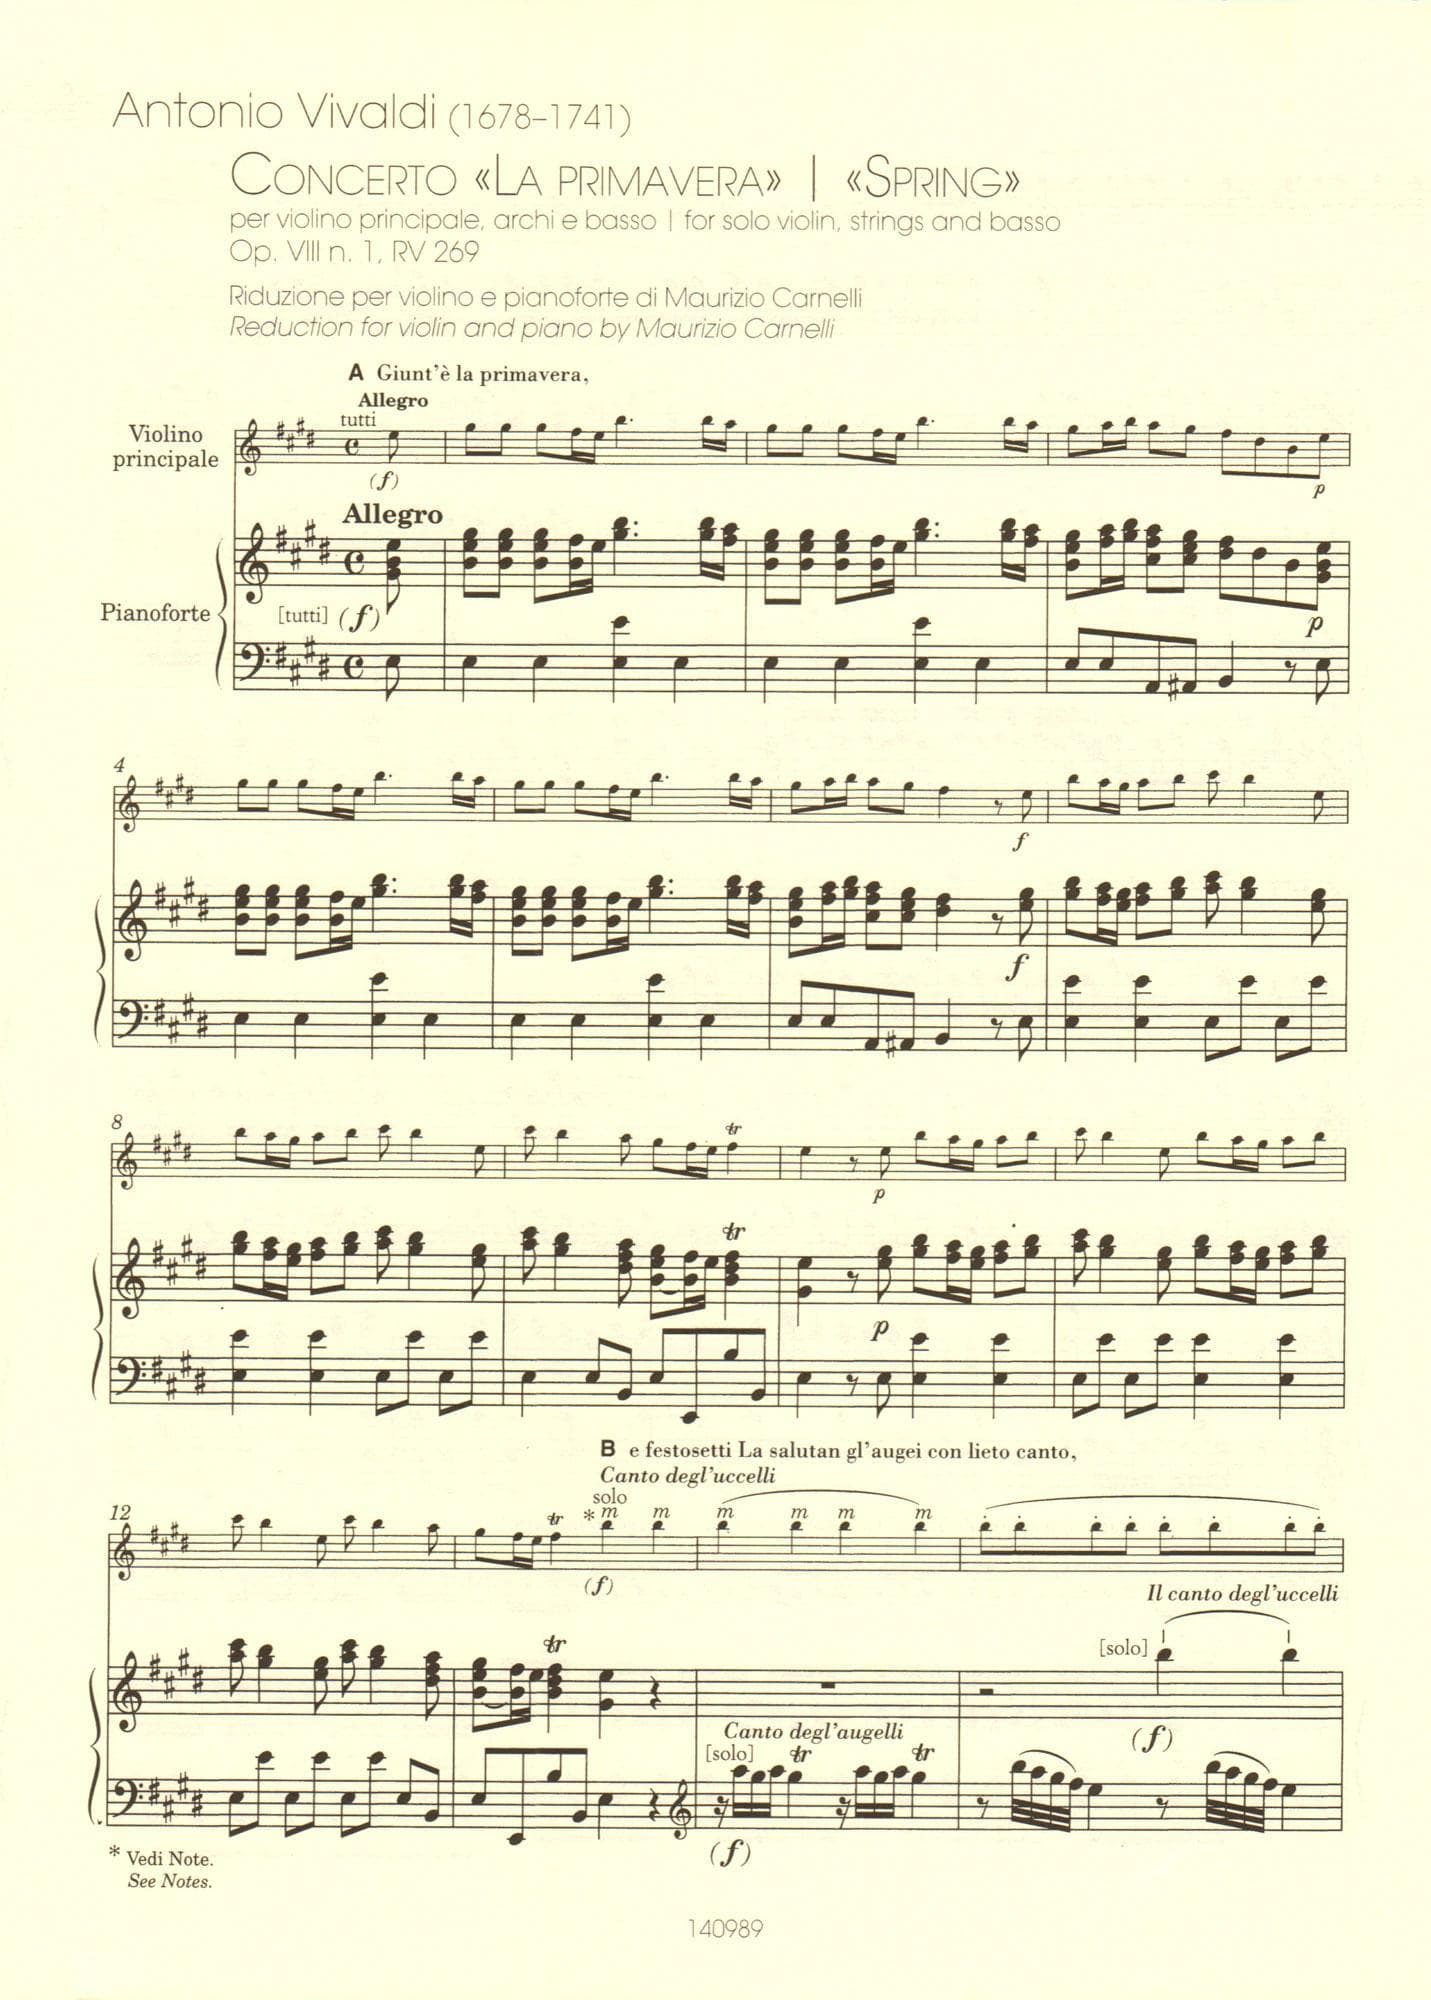 Vivaldi, Antonio - The Four Seasons (Complete) - for Violin and Piano - reduction by Maurizio Carnelli - Ricordi